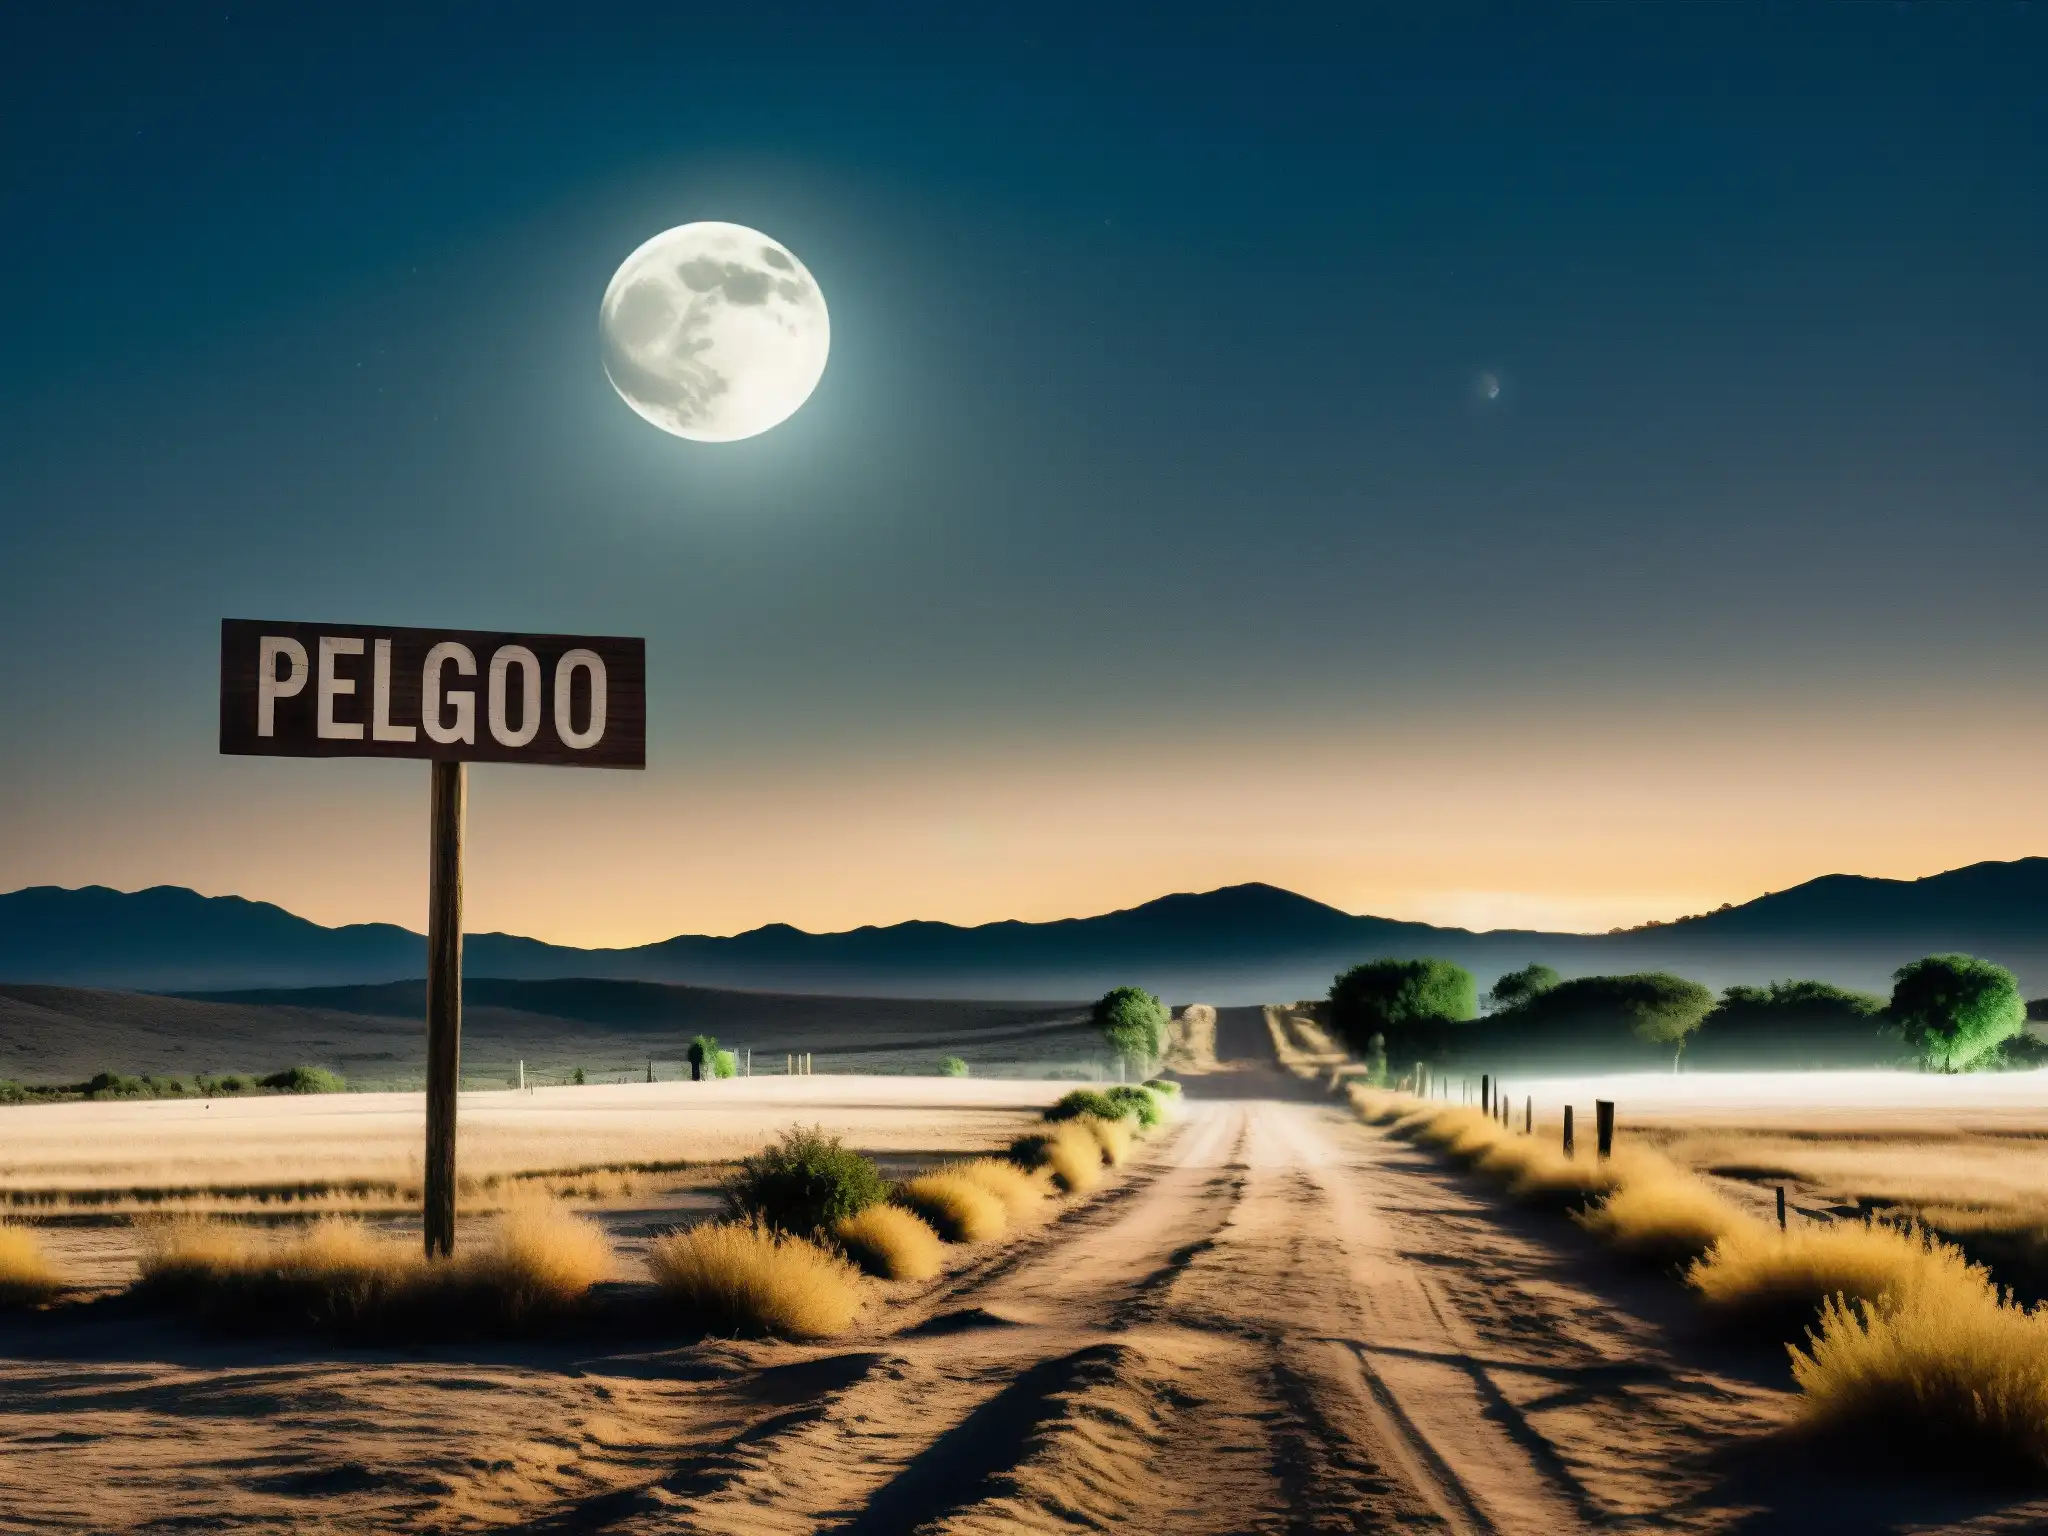 Imagen de un paisaje rural mexicano iluminado por la luna, con neblina y una figura misteriosa a lo lejos